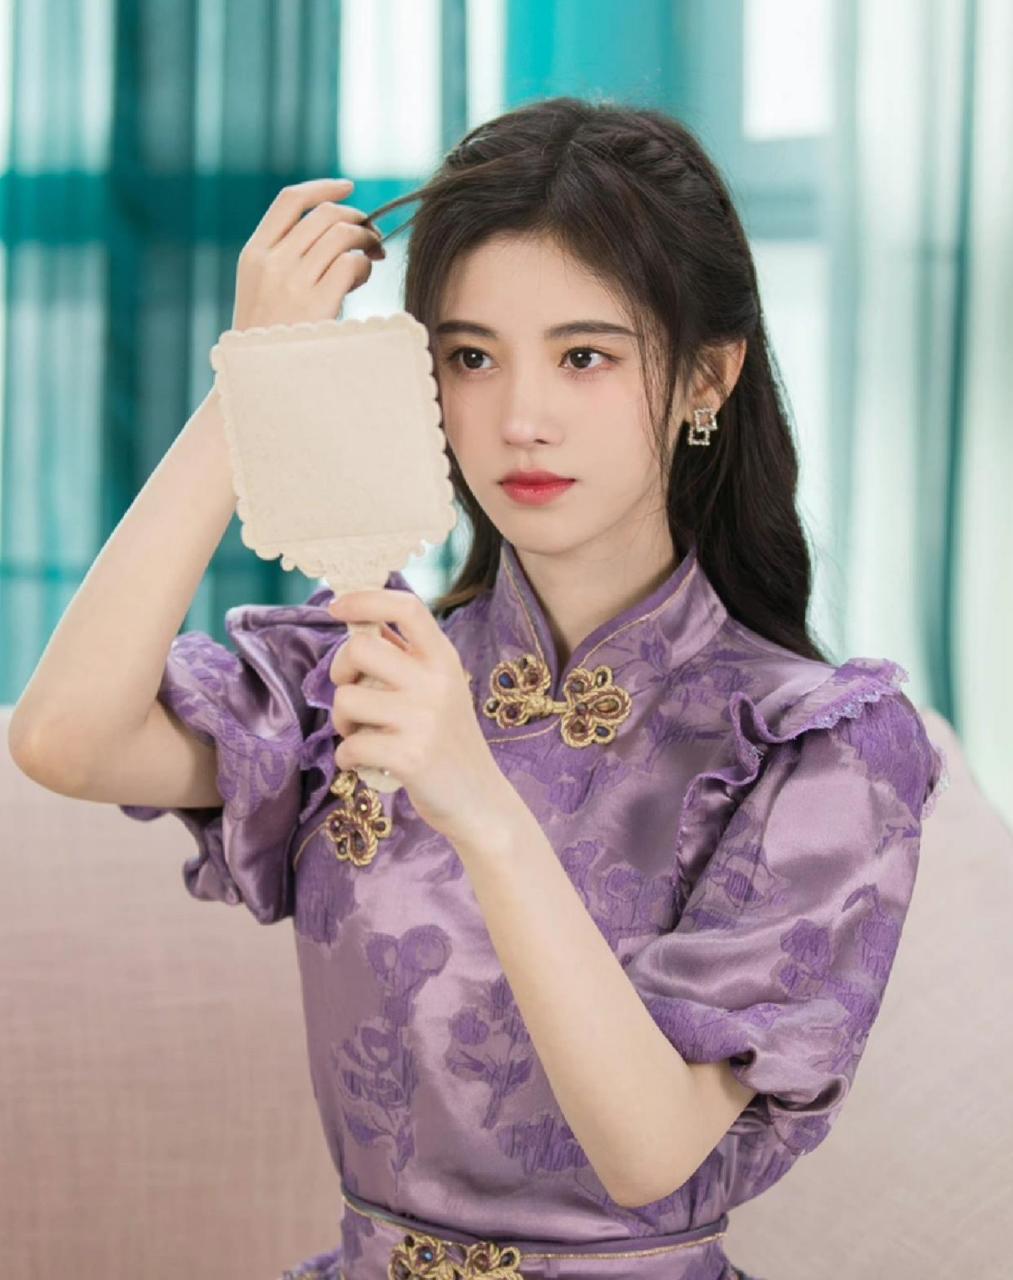 鞠婧祎美女,新中式紫色旗袍风格穿搭